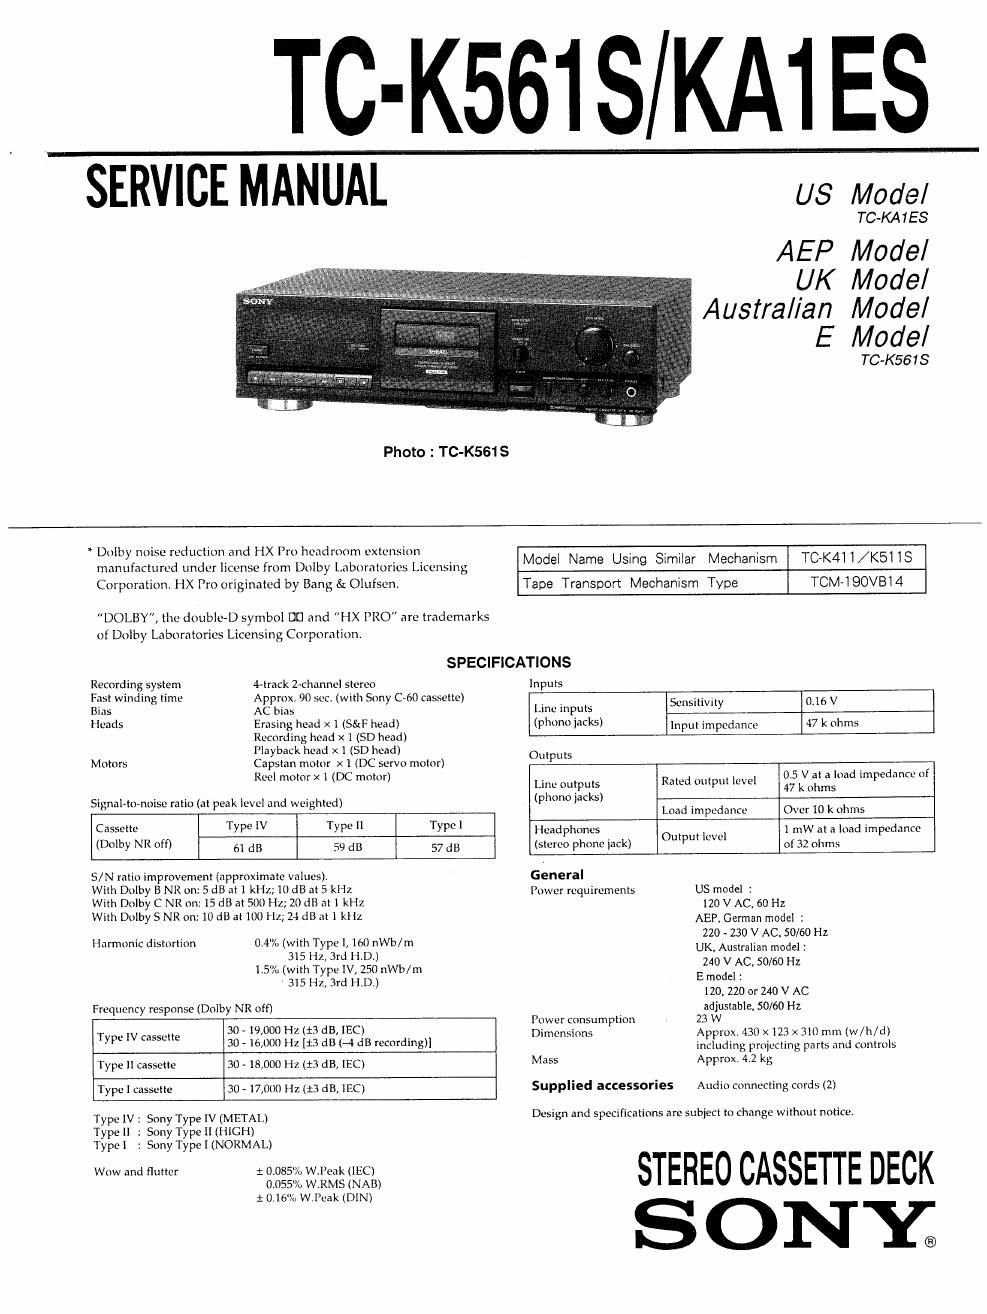 sony tc k 561 s service manual